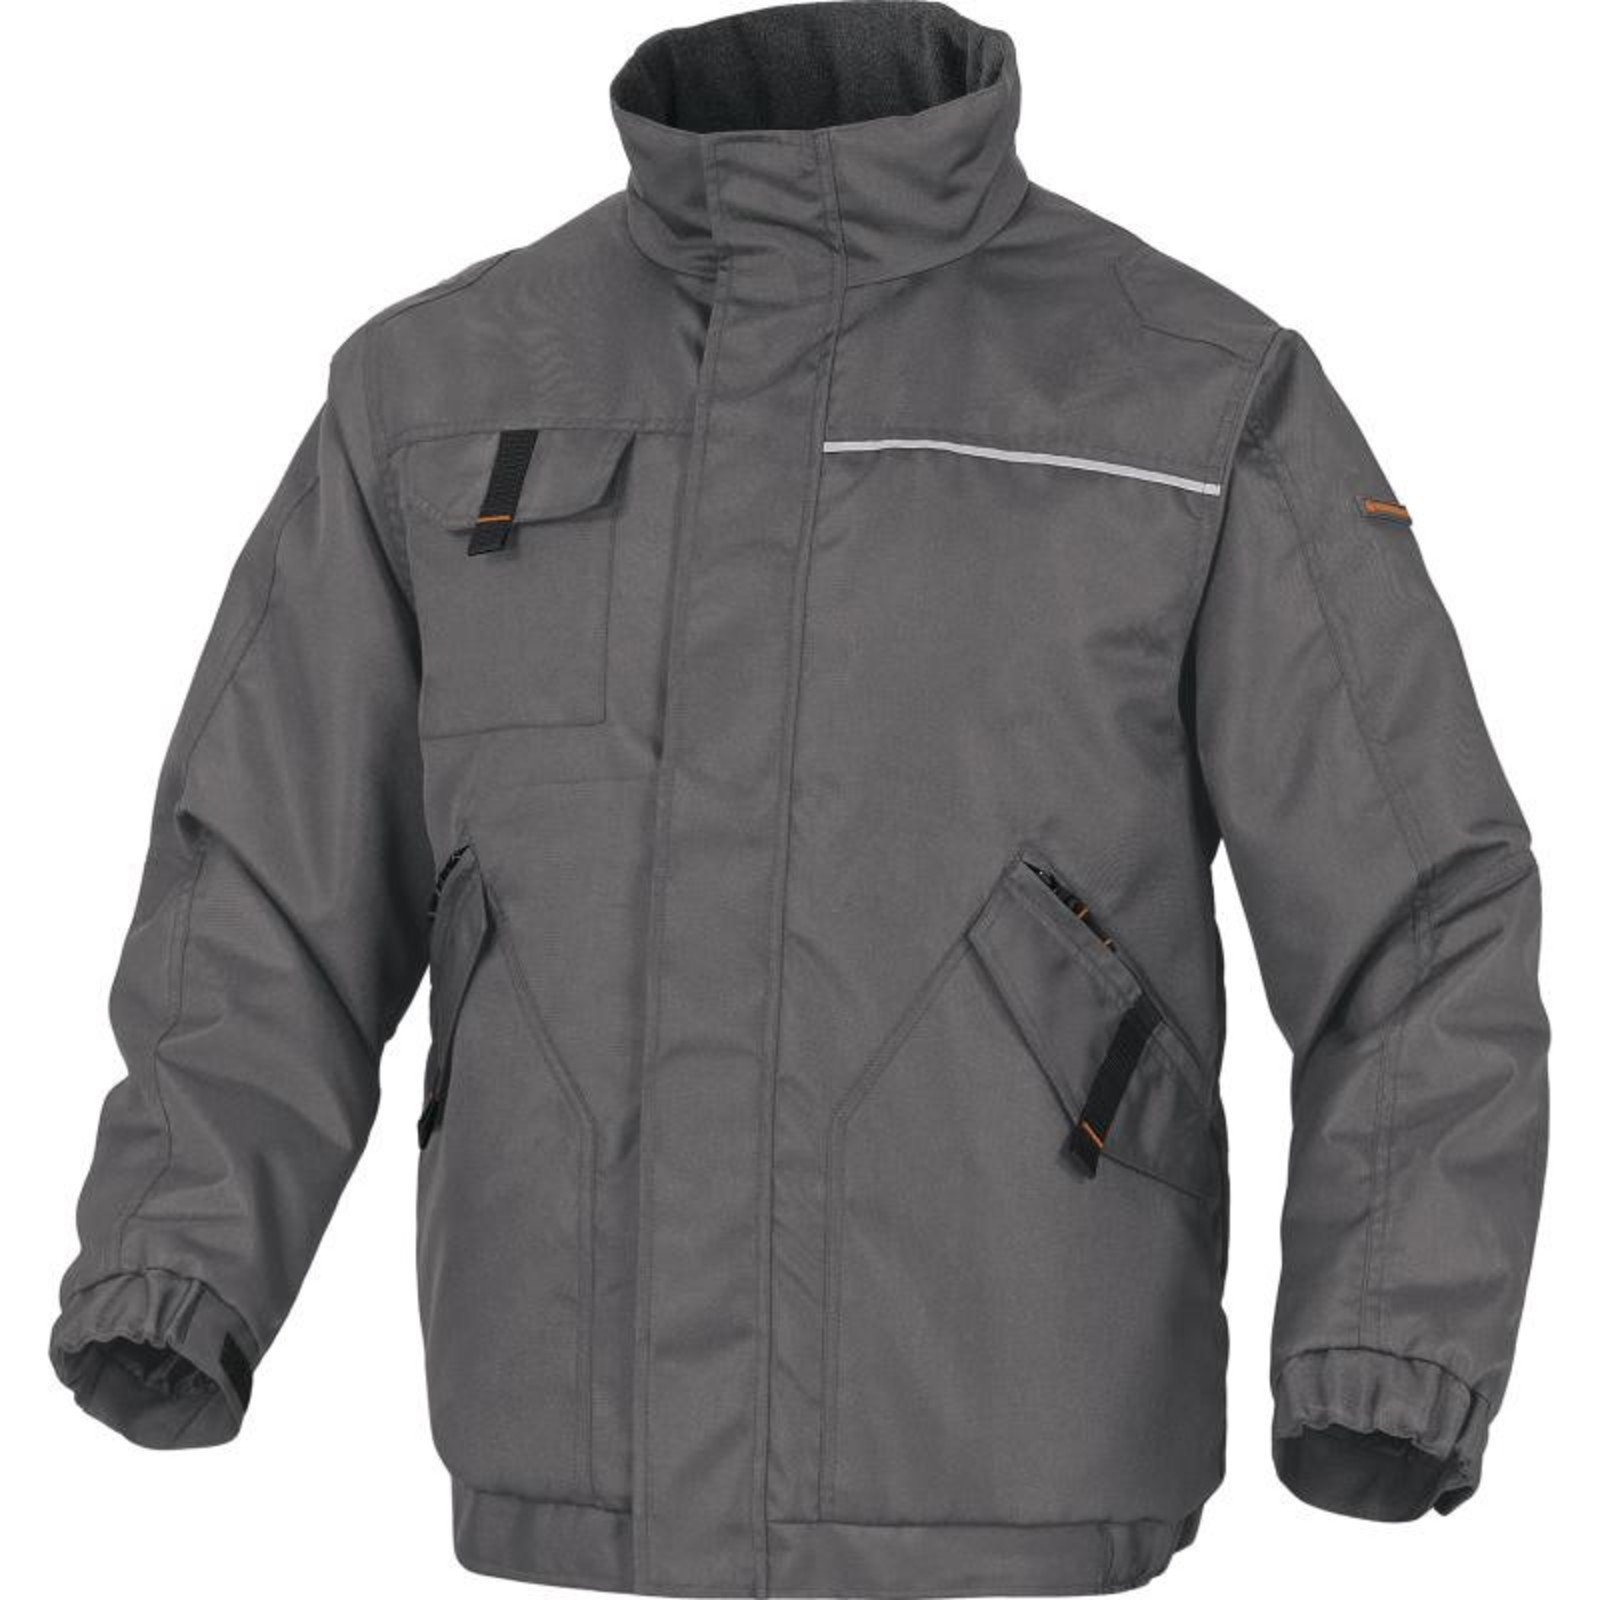 Zimná pracovná bunda Delta Plus Northwood2 - veľkosť: XL, farba: sivá/oranžová